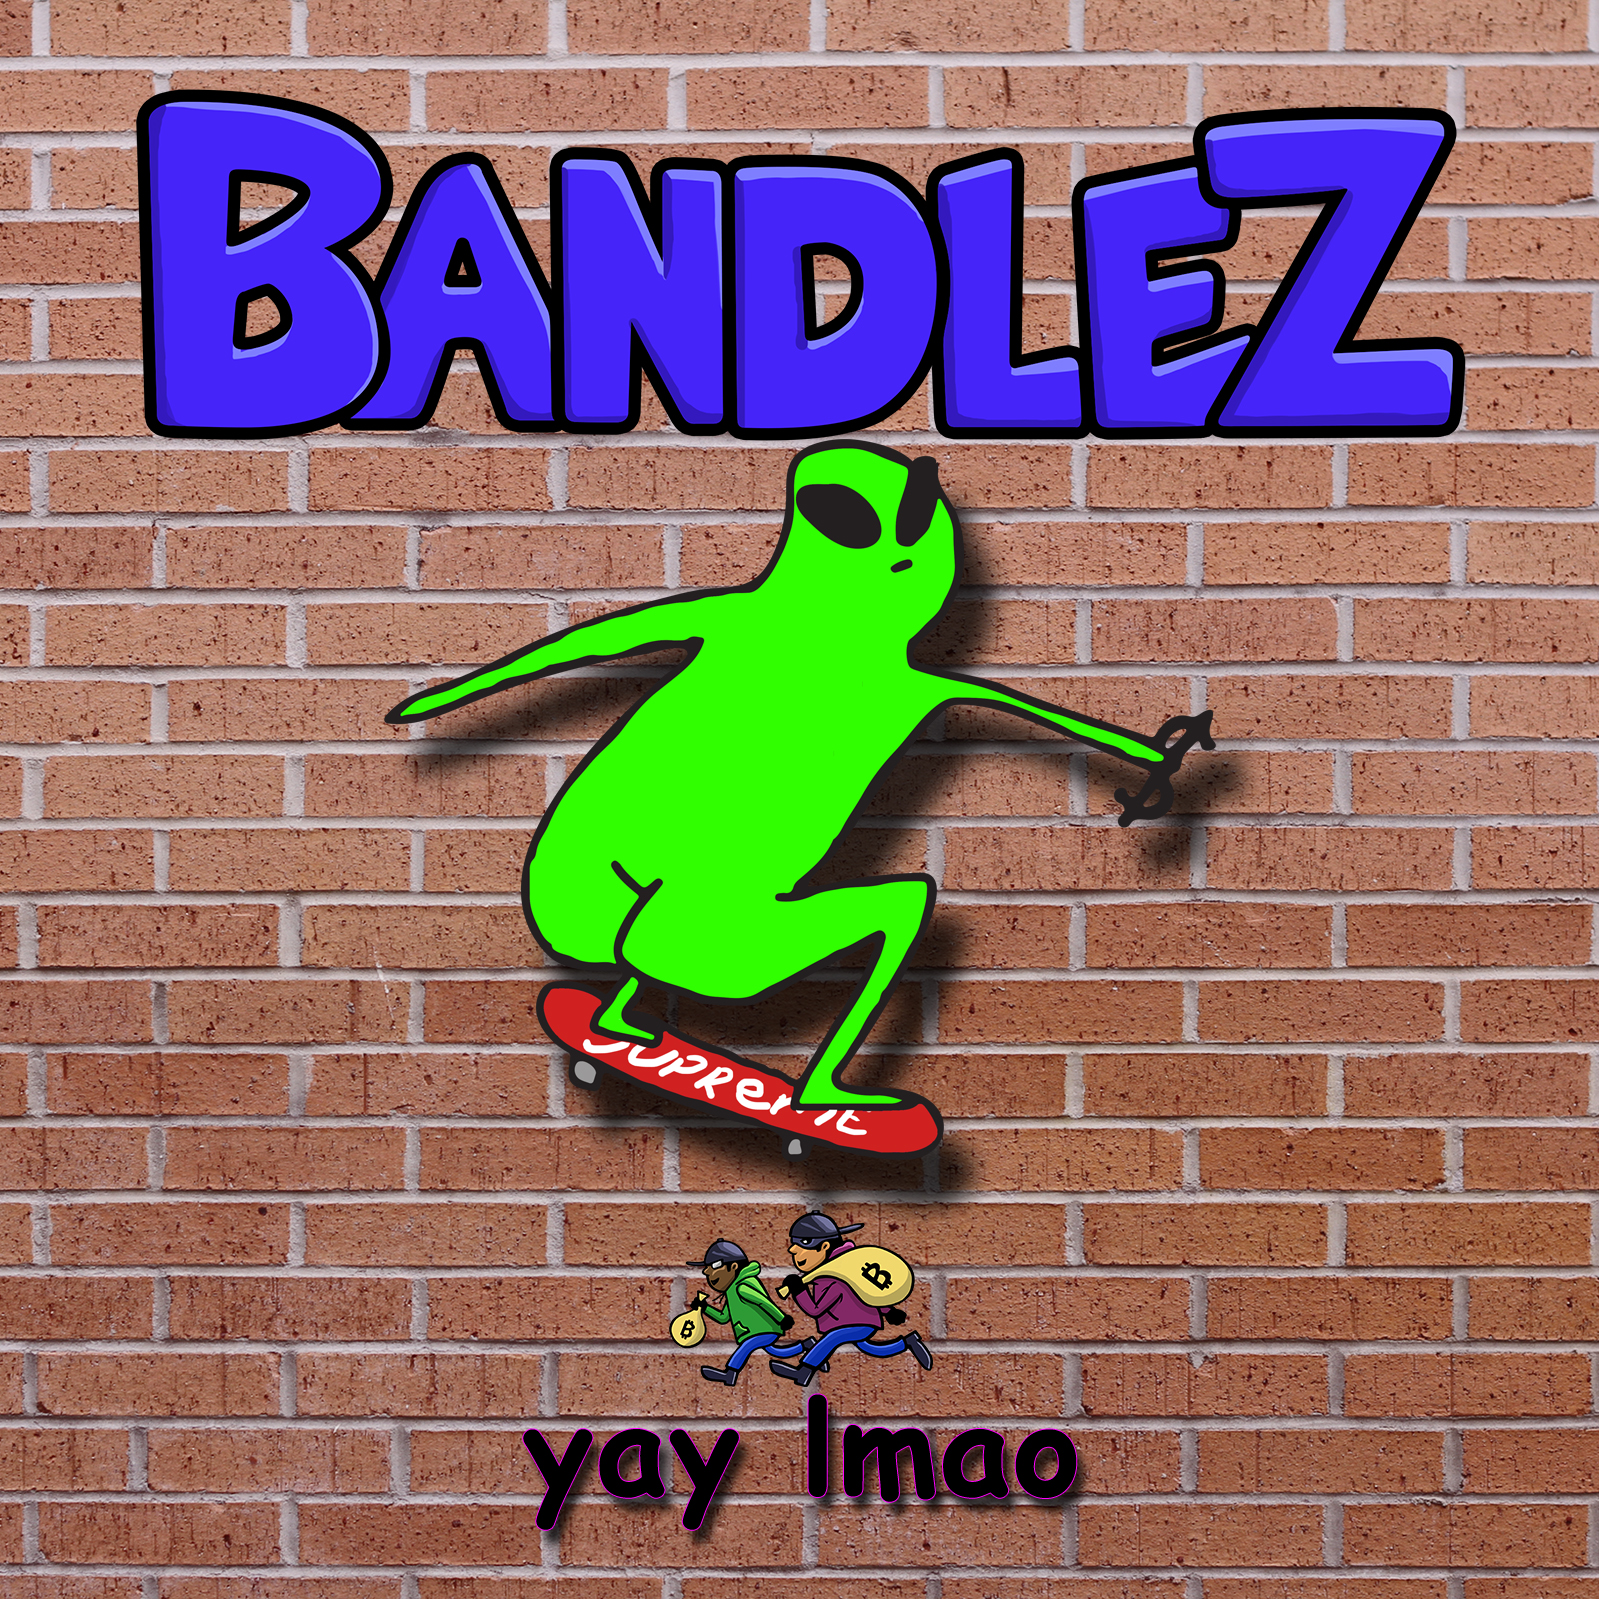 Bandlez - yay lmao